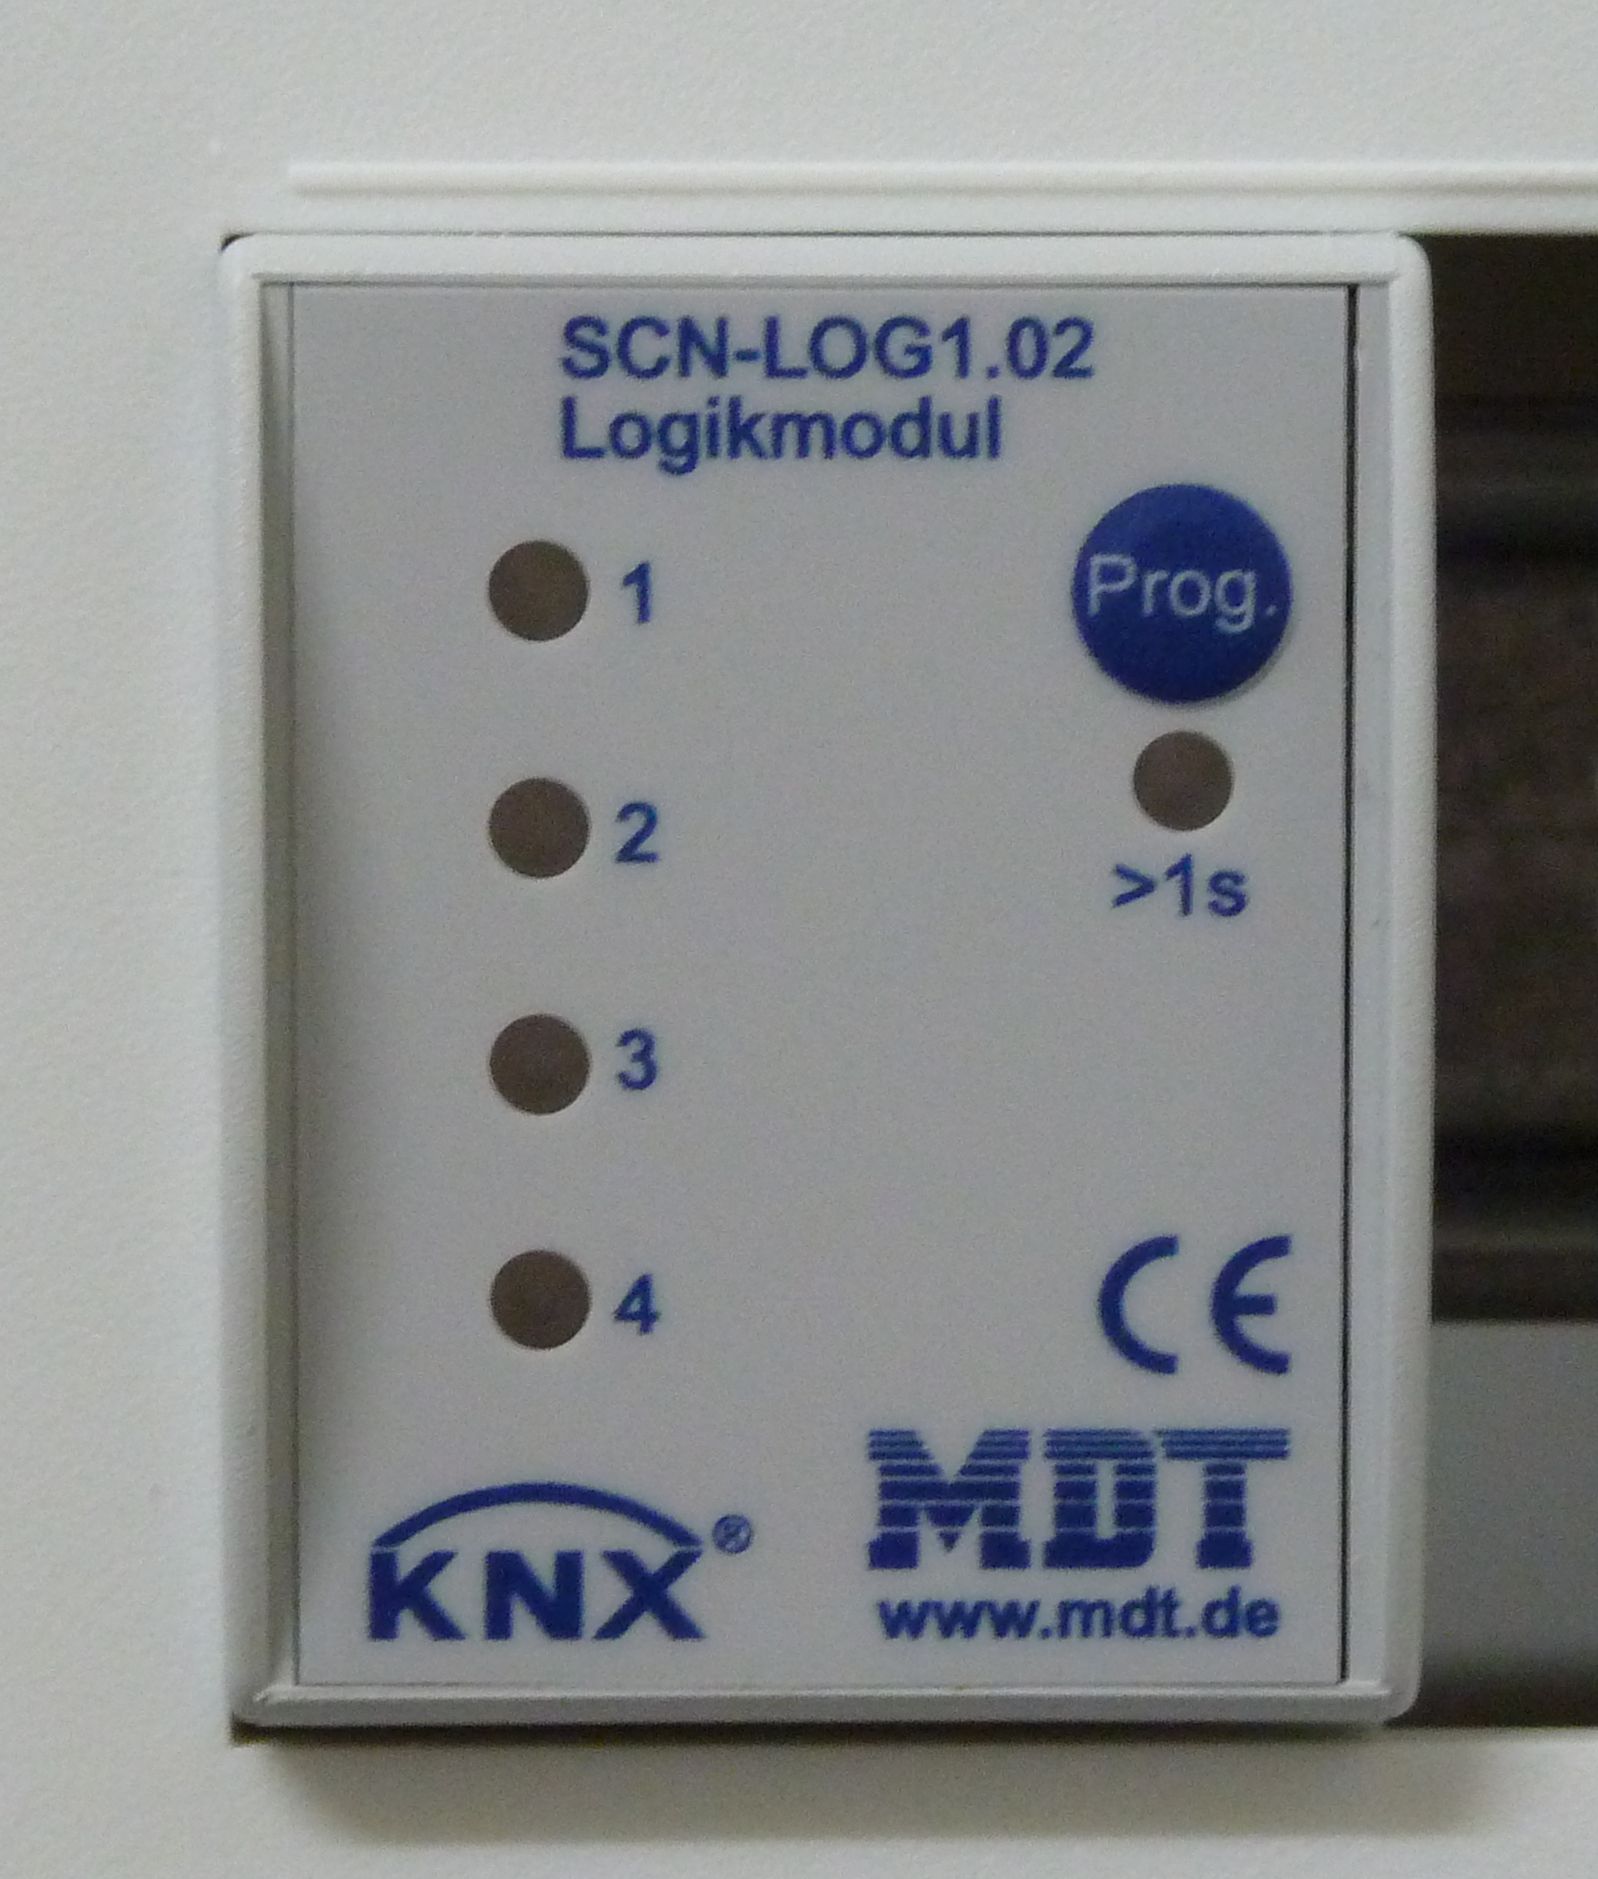 MDT Logikmodul SCN-LOG1.02